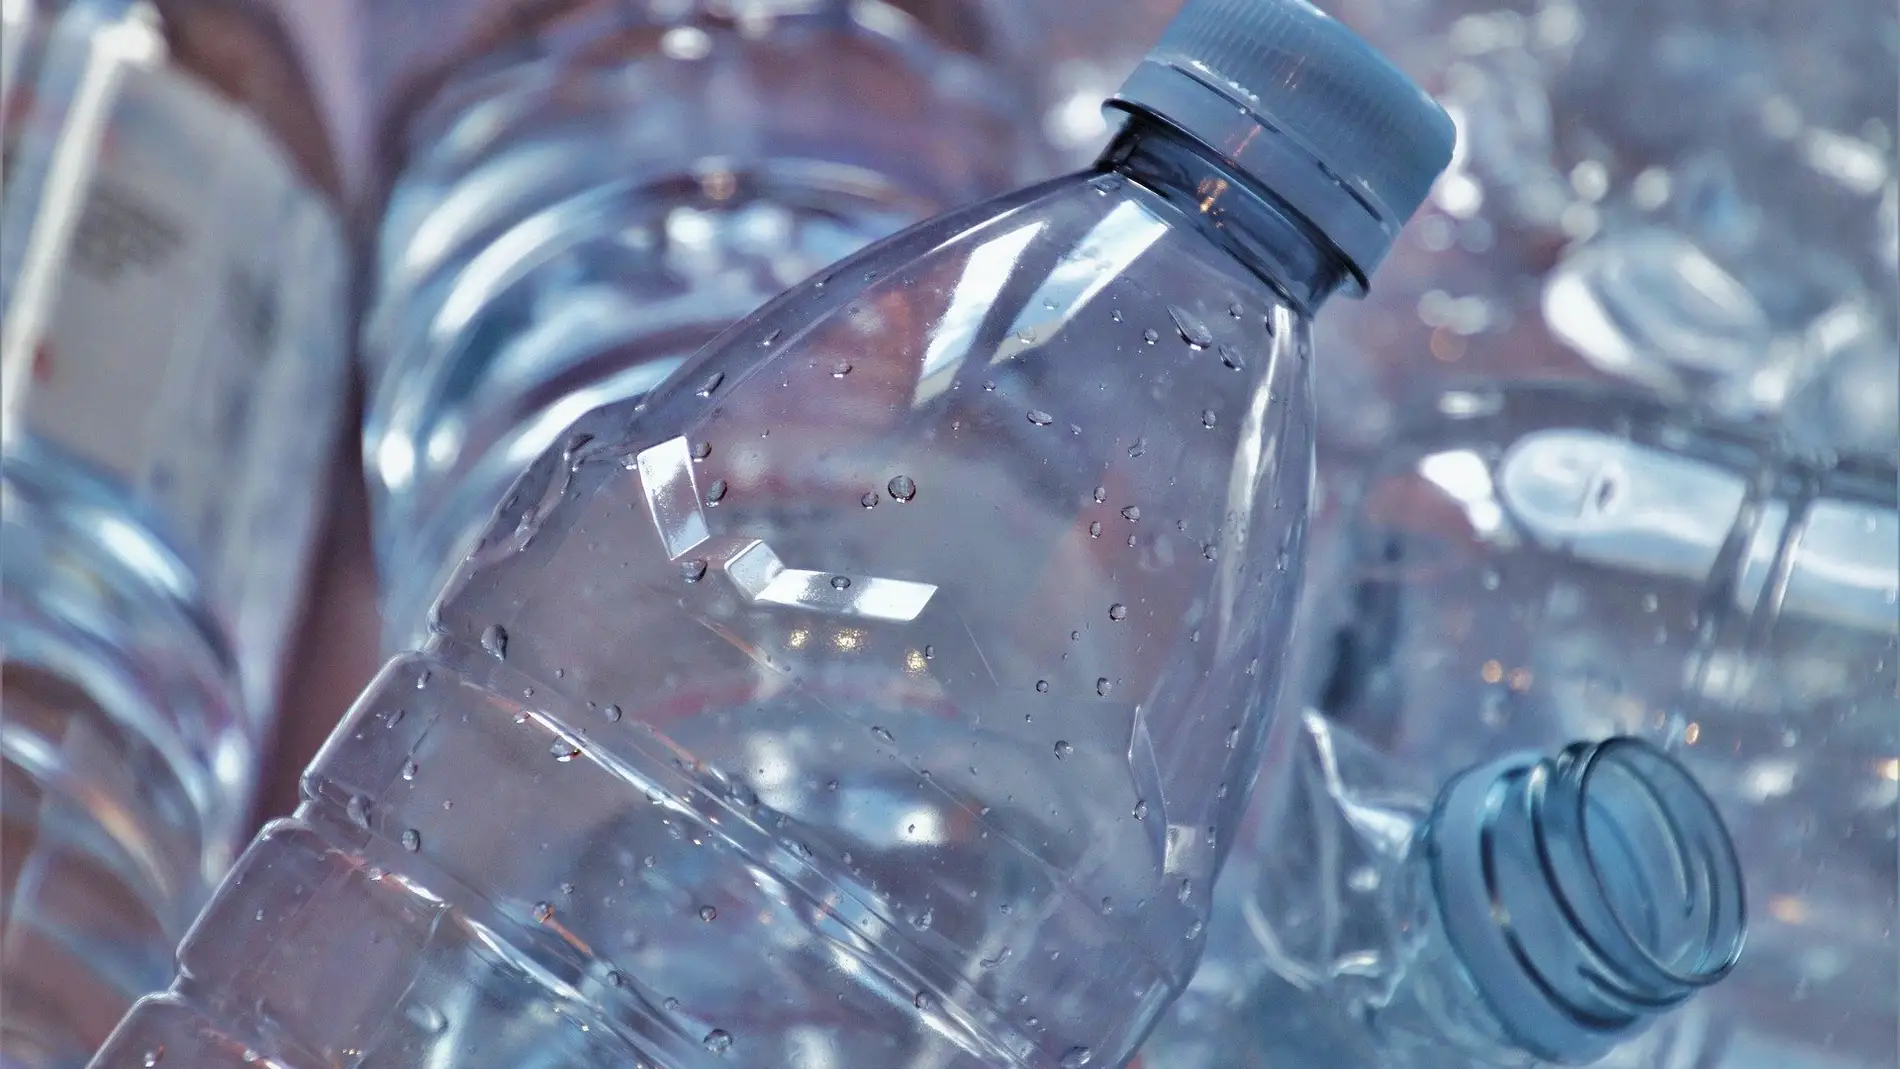 Reciclaje de botellas de plástico